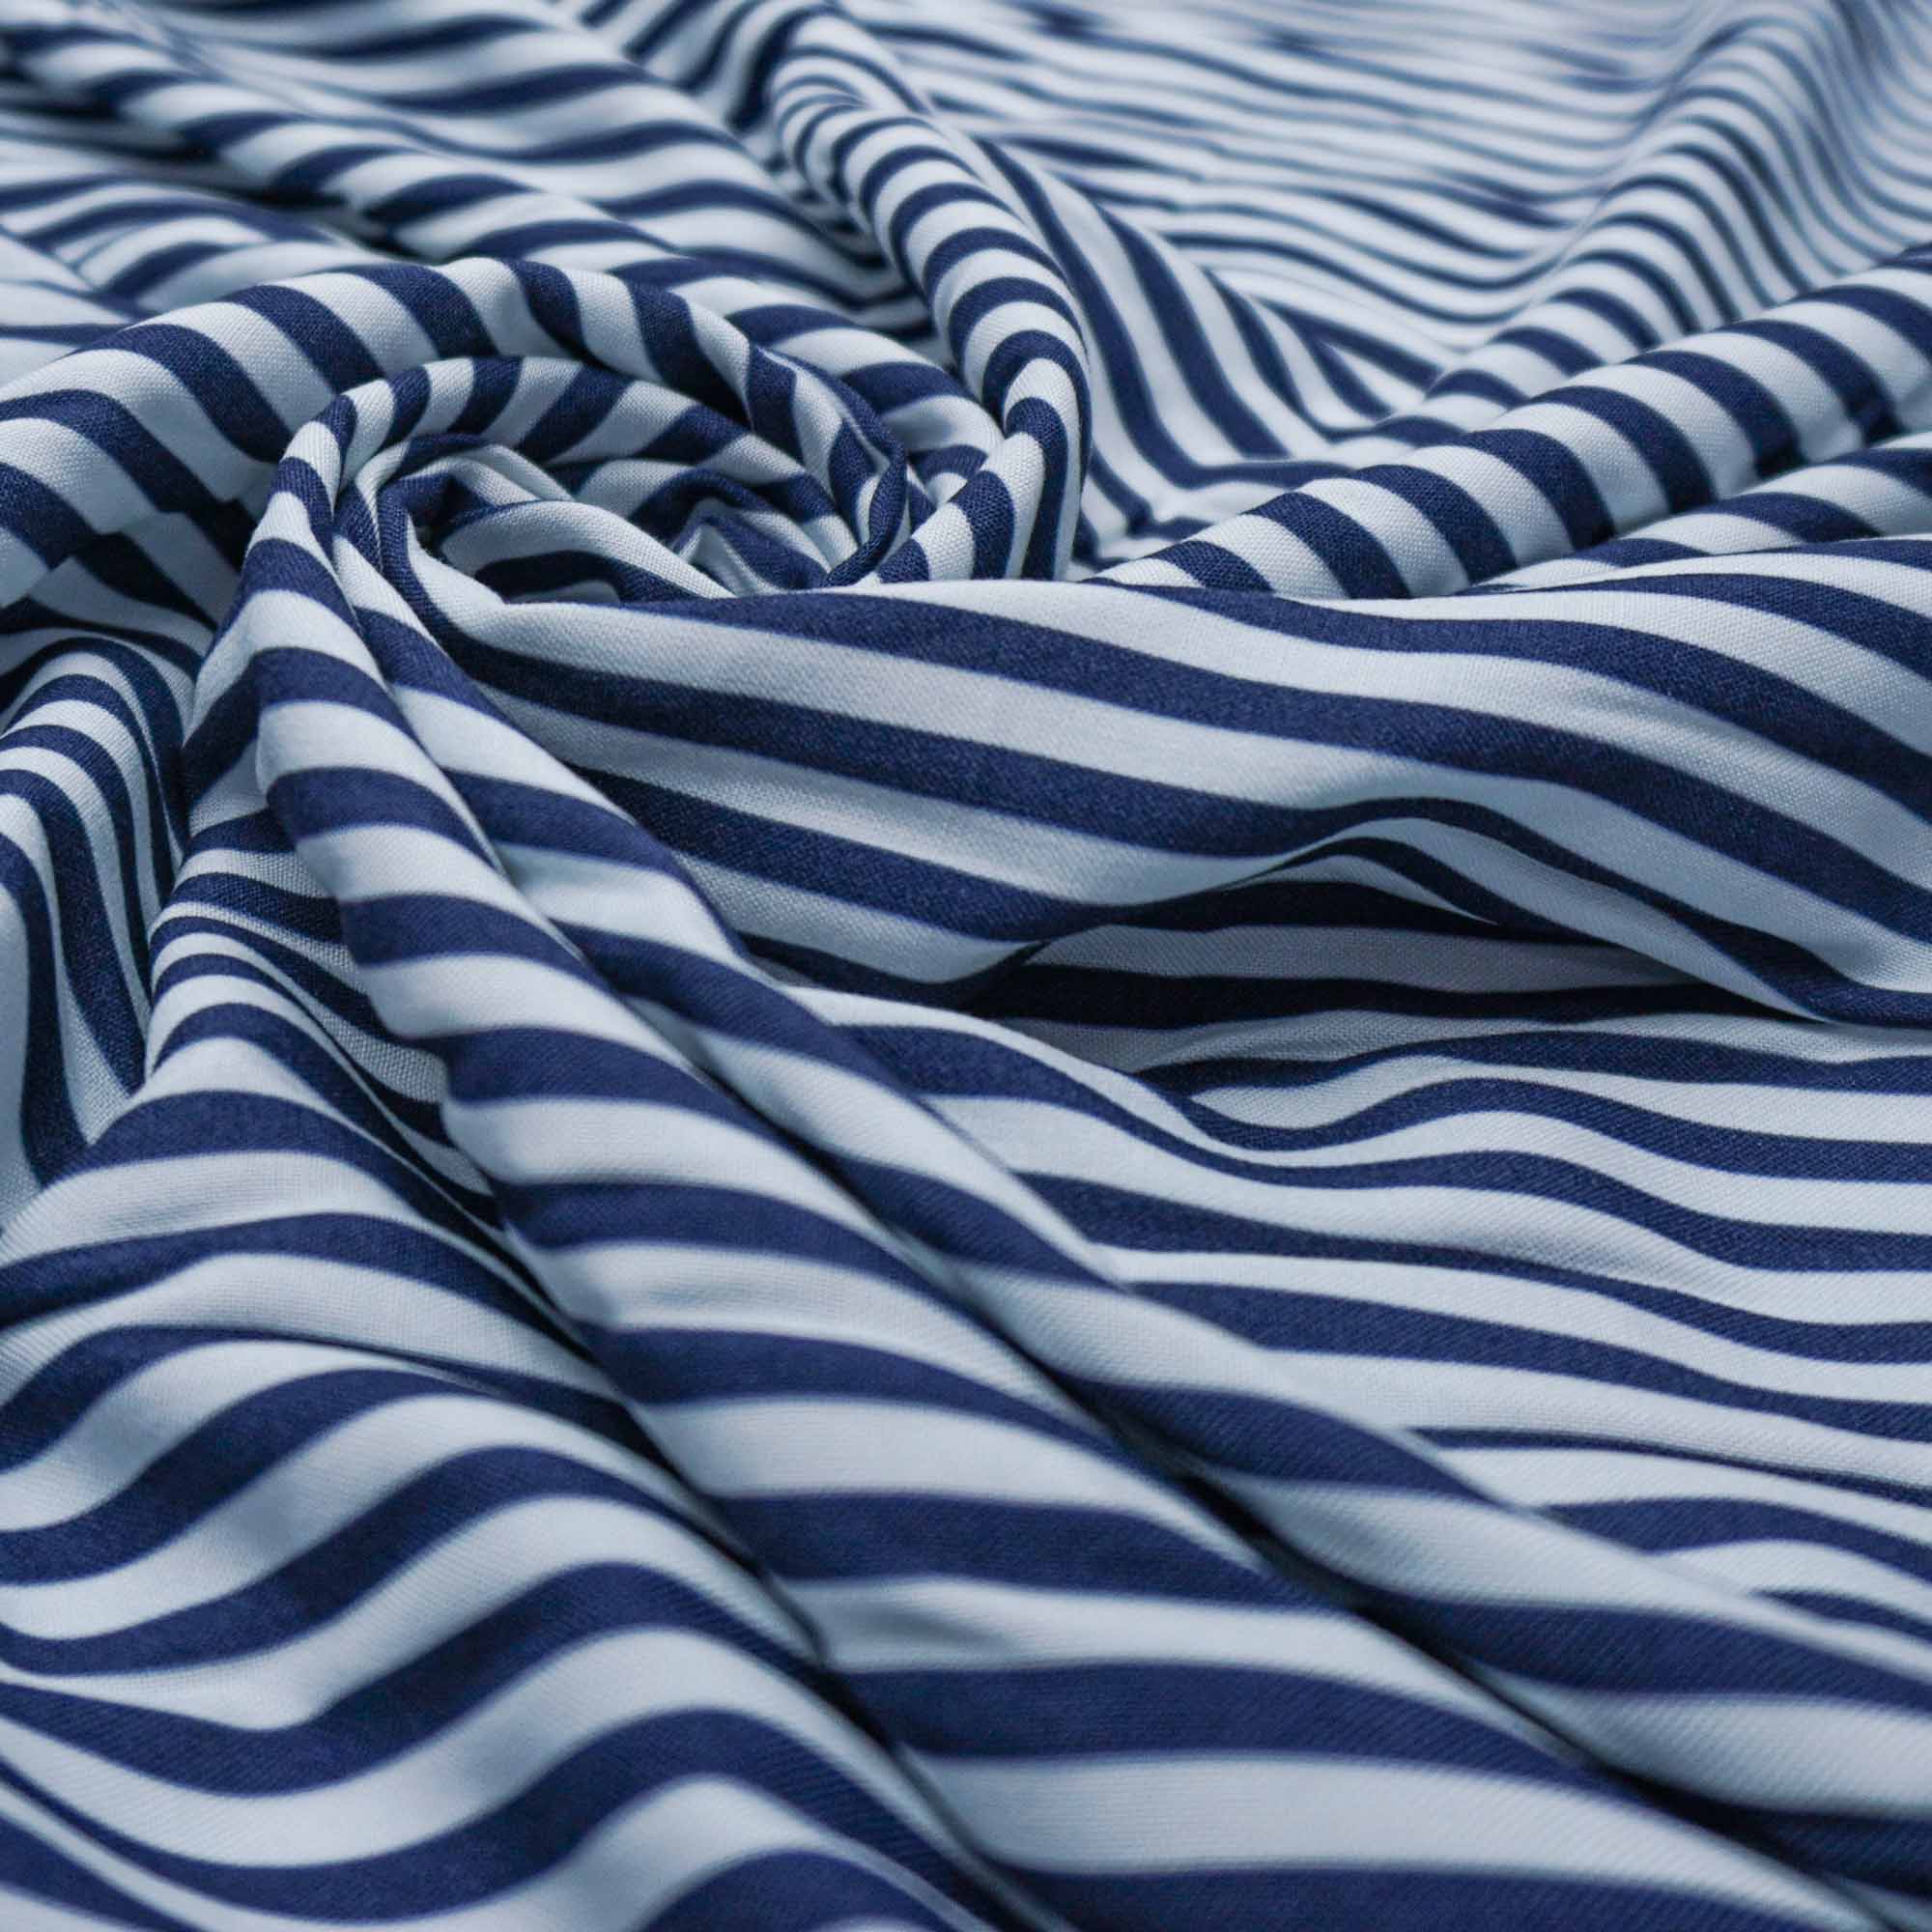 Tecido viscose estampado listras azul marinho/branco (tecido italiano legítimo)